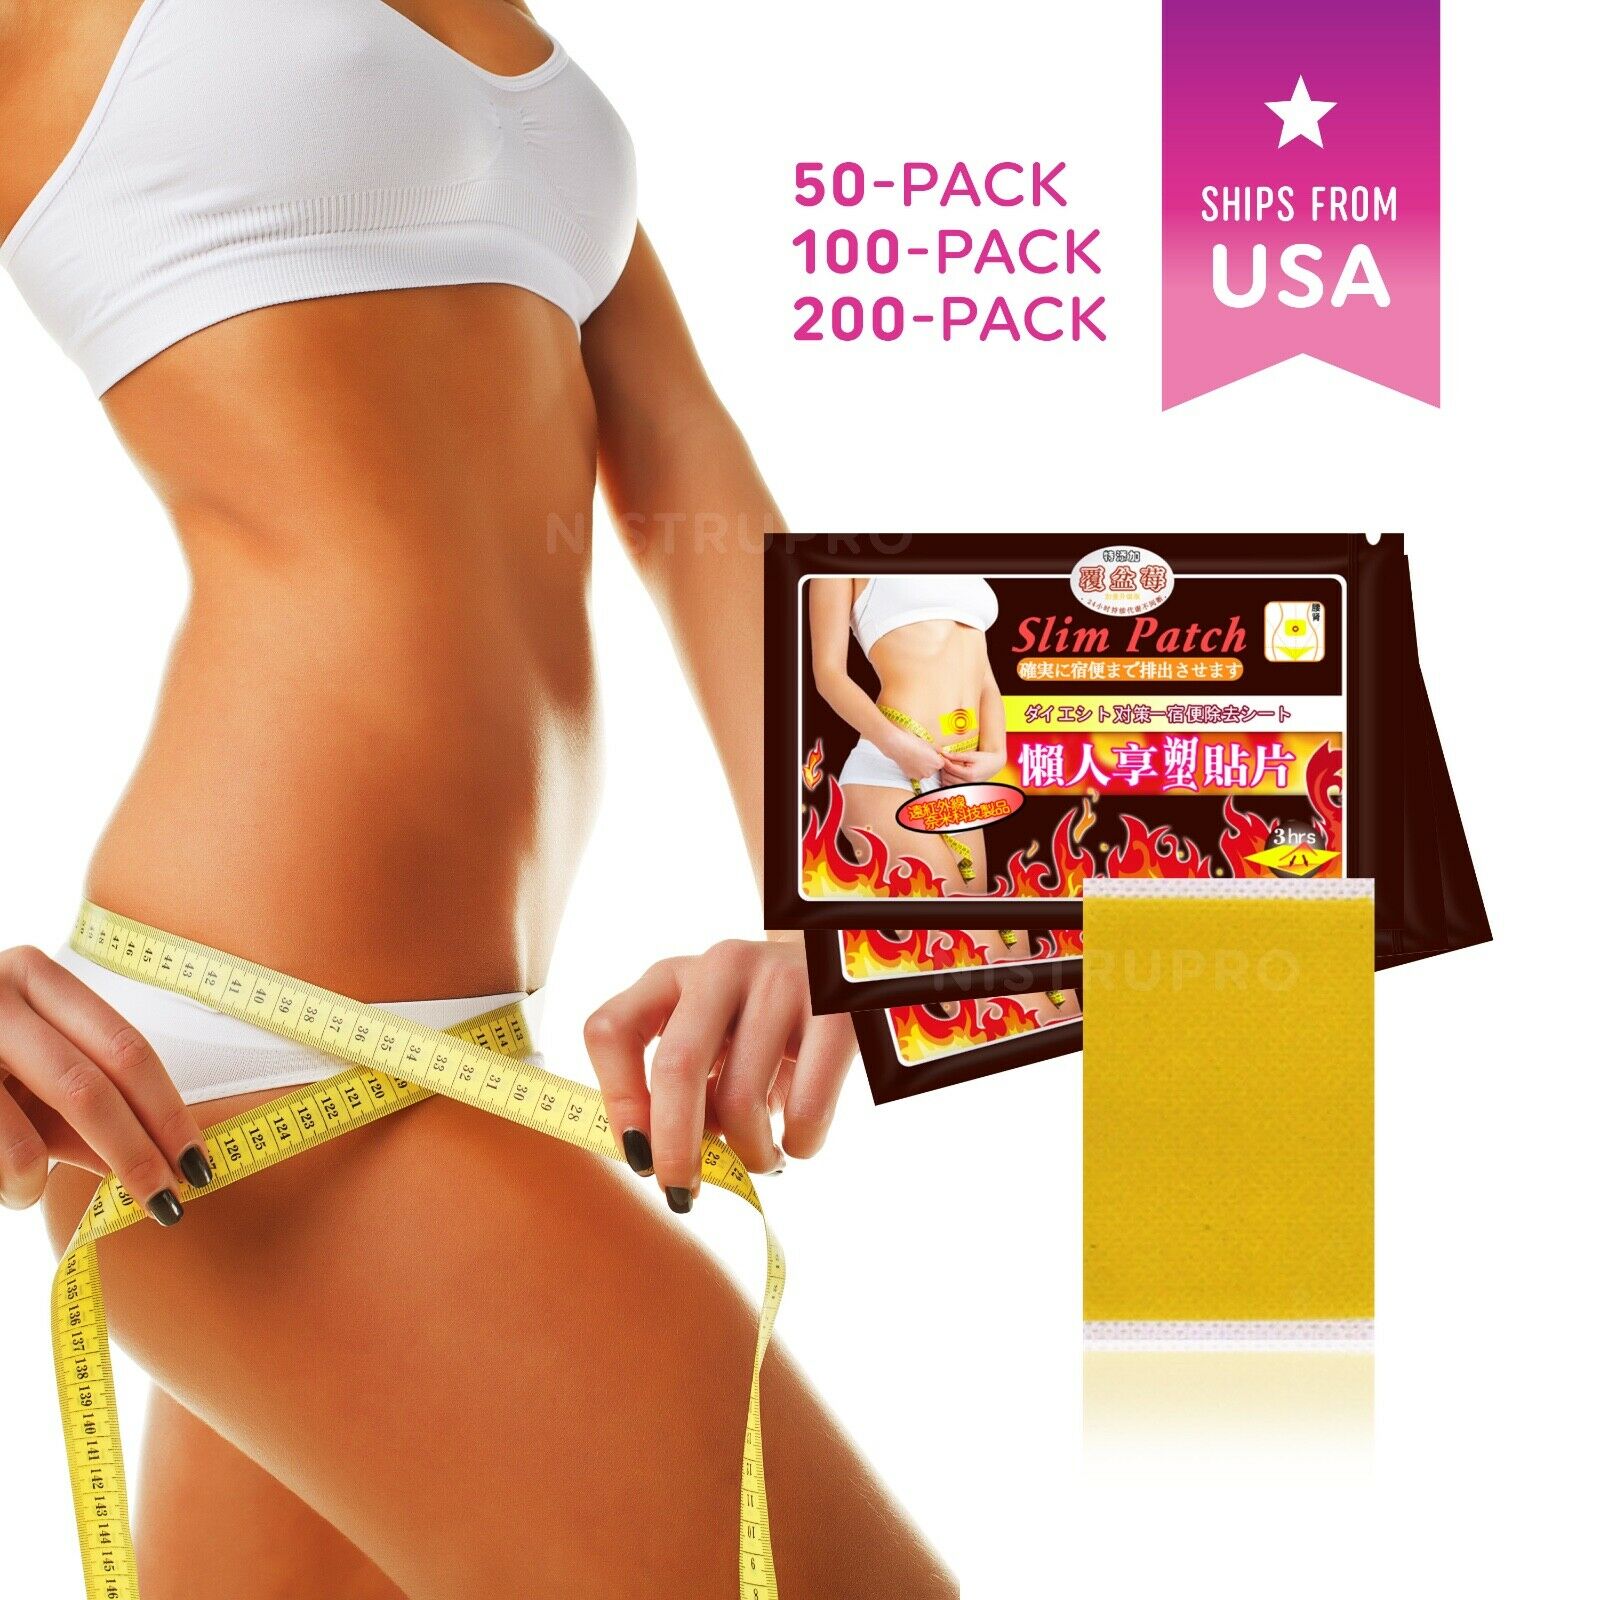 Slim Patch Fast Fat Burn Weight Loss Diet Slimming Sticker Pad - 50, 100, 200 Pc